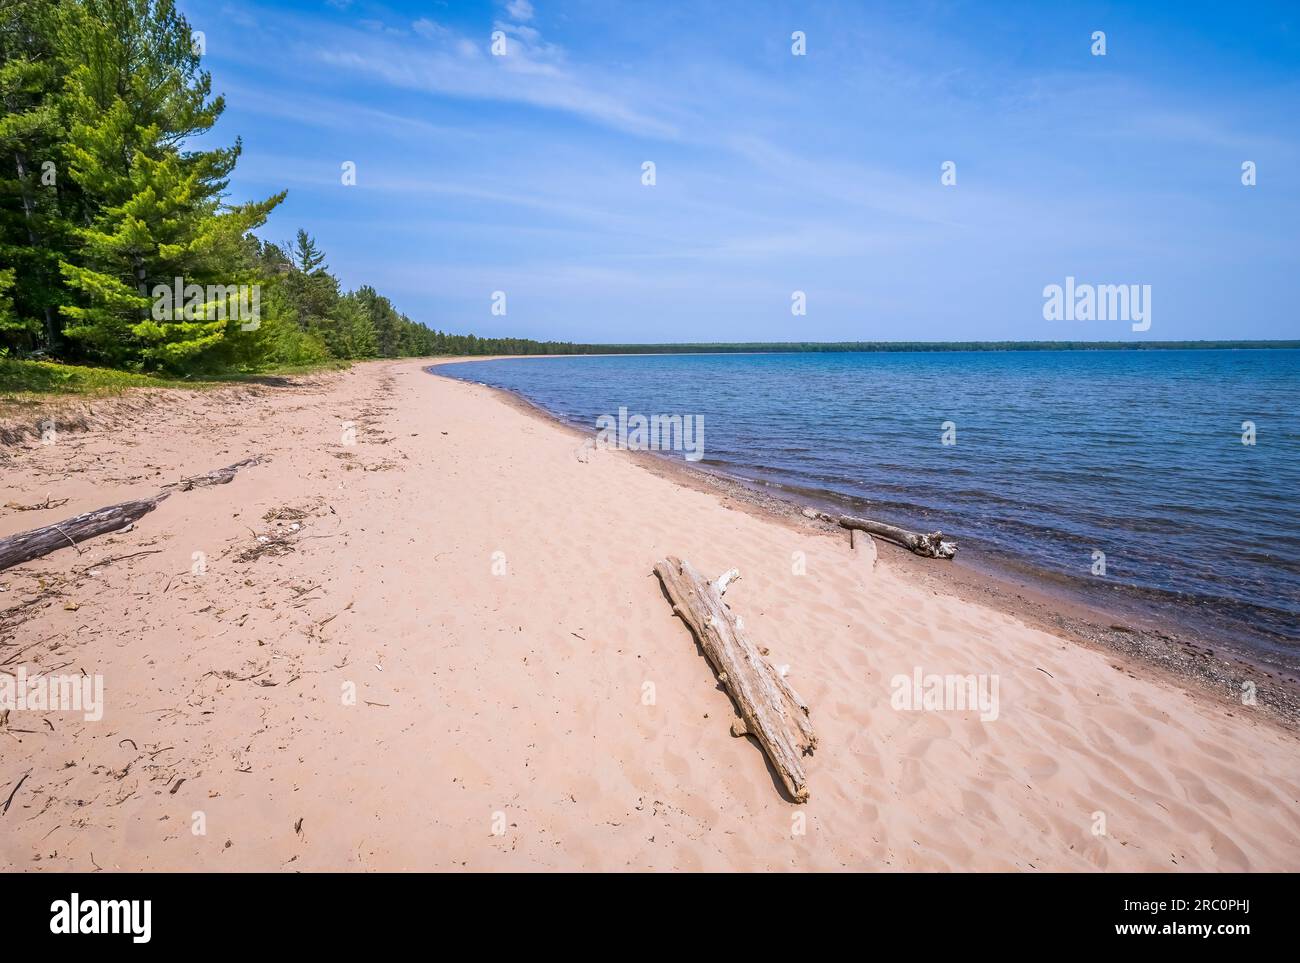 Lake Superior Beach dans Big Bay State Park sur Madeline Island dans les îles Apostle National Lakeshore dans le Wisconsin USA Banque D'Images